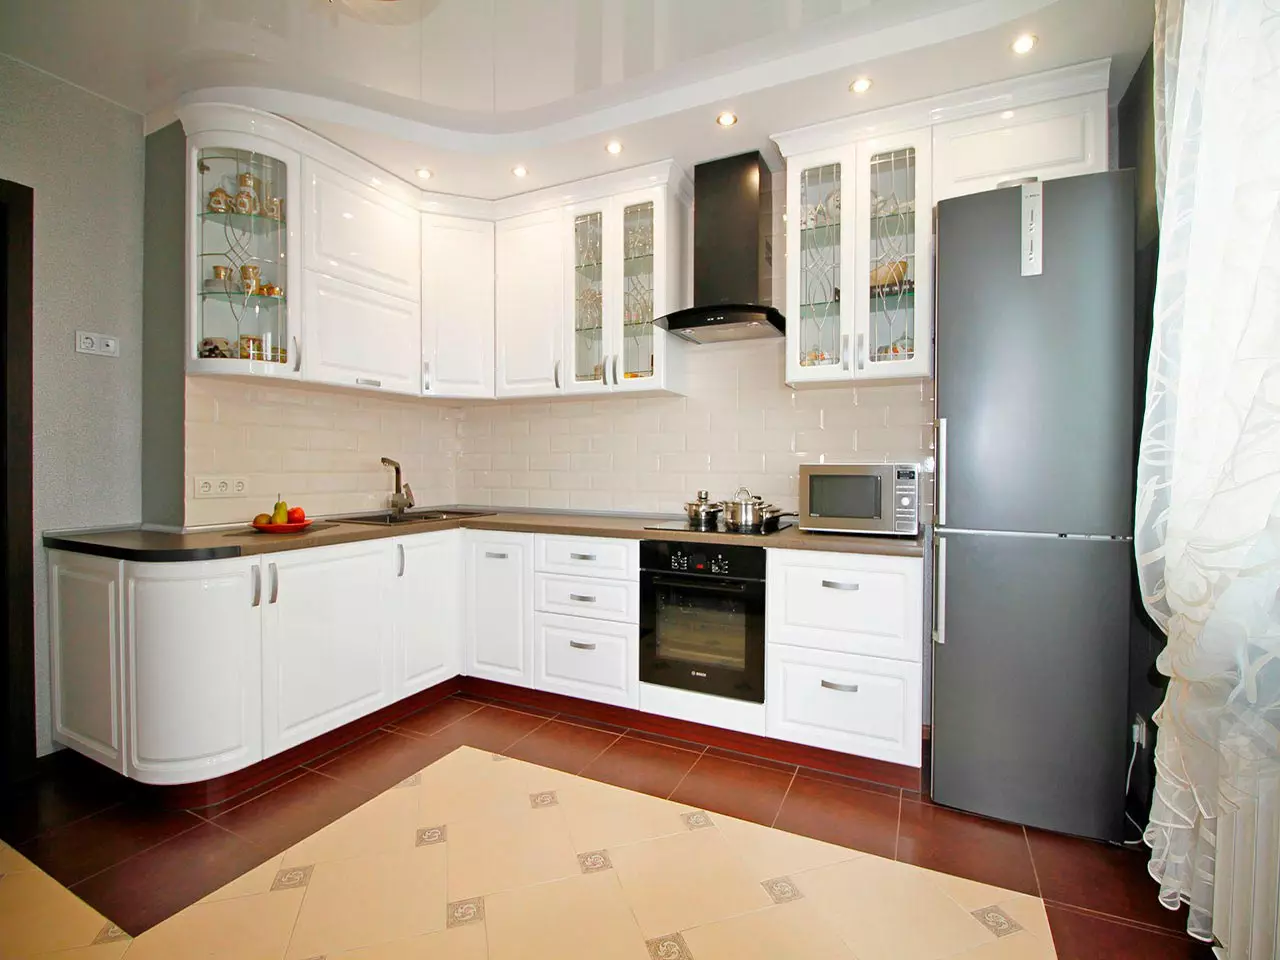 Cozinhas angulares brancas (46 fotos): headsets de cozinha brilhante e fosco no interior, estilo moderno e clássico, de MDF e plástico 21179_30